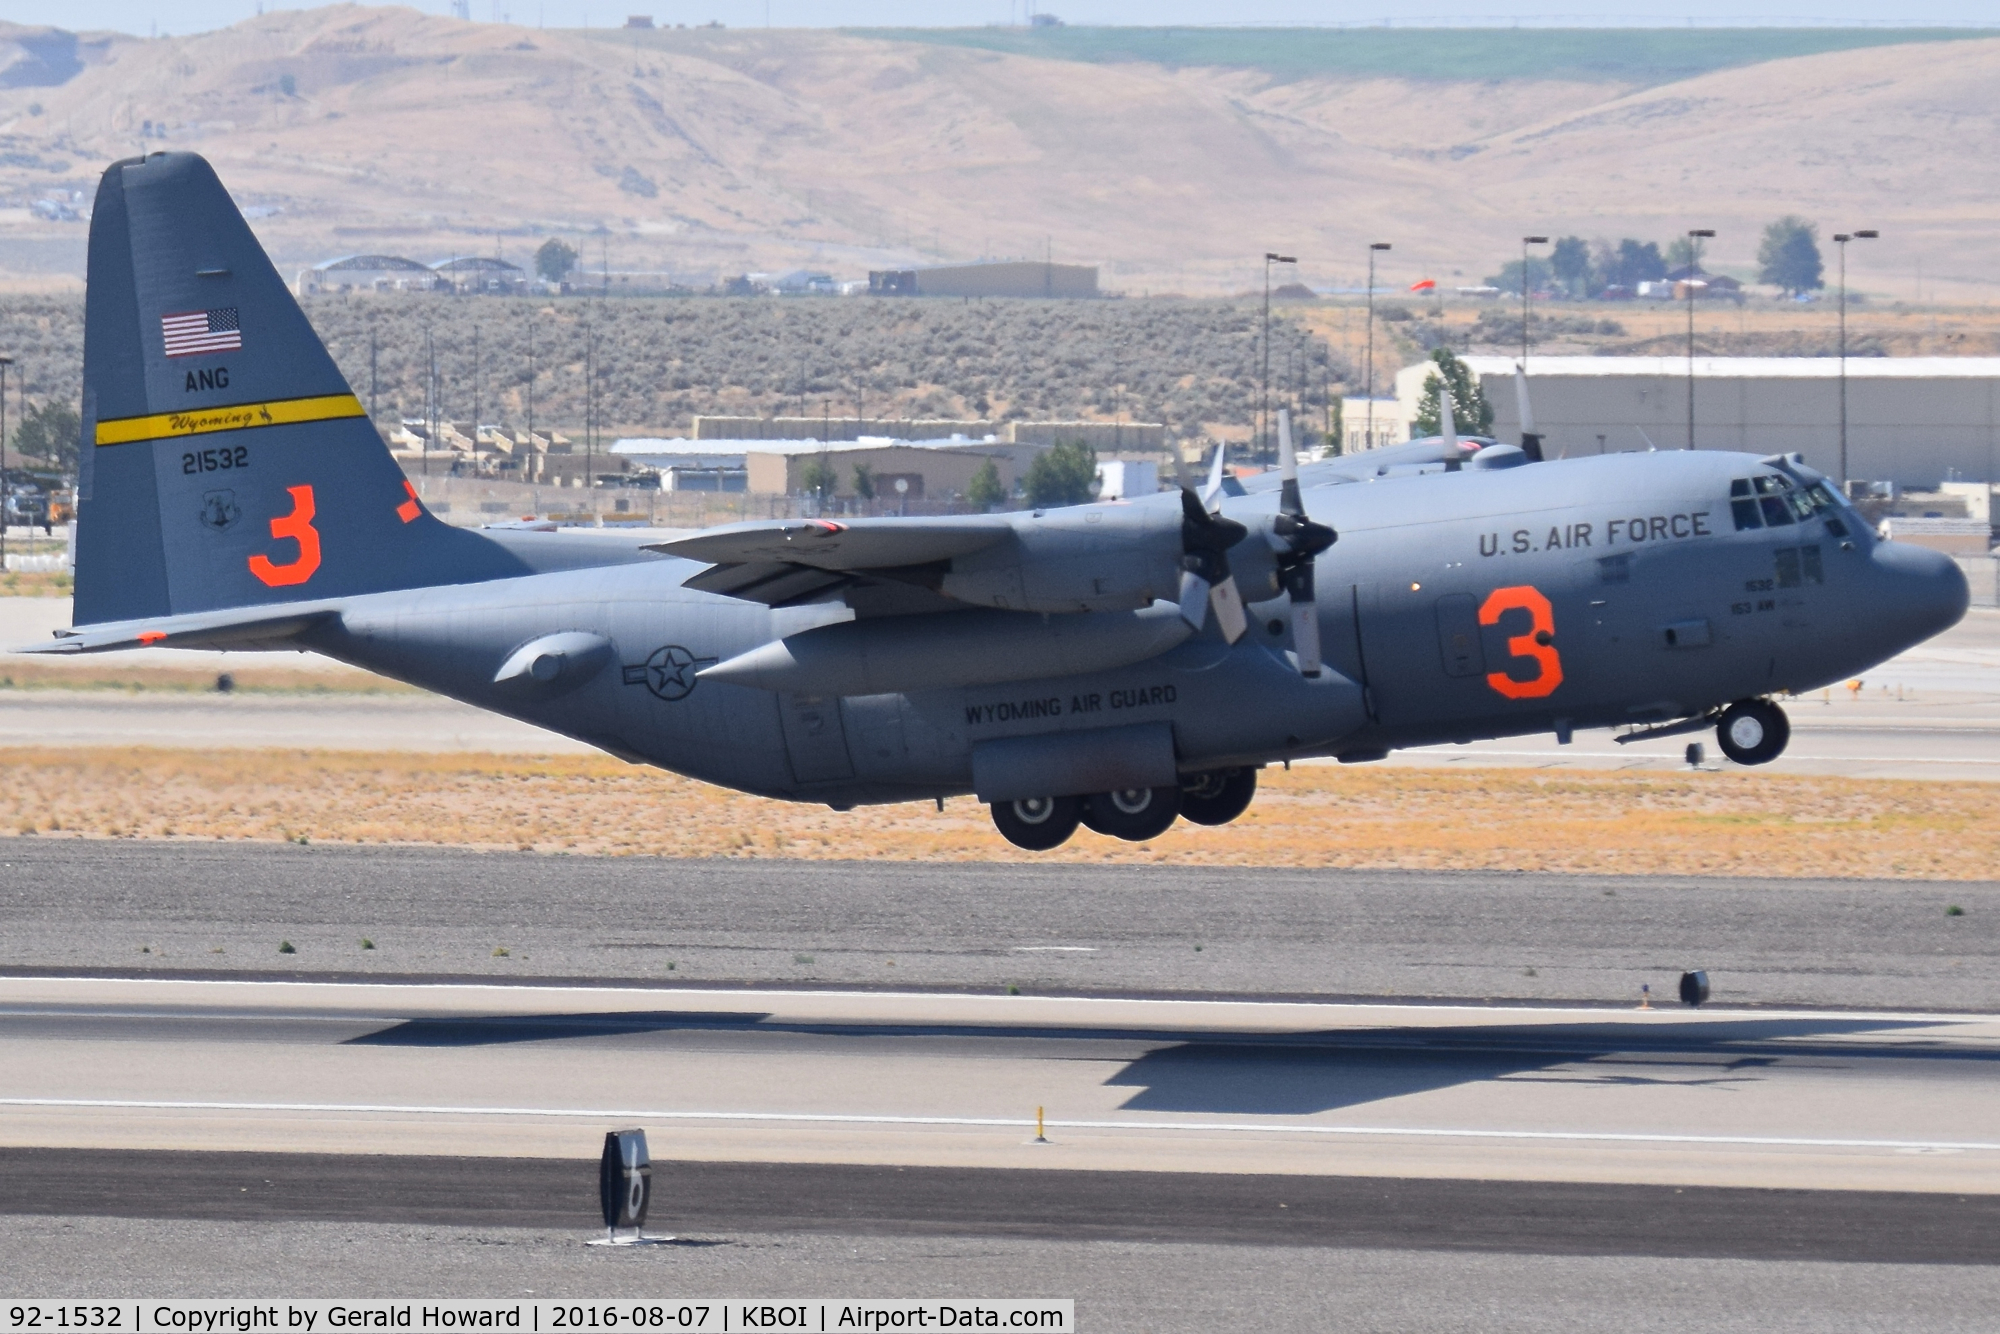 92-1532, 1992 Lockheed C-130H Hercules C/N 382-5328, 153rd Airlift Wing, WY ANG departing RWY 28R.